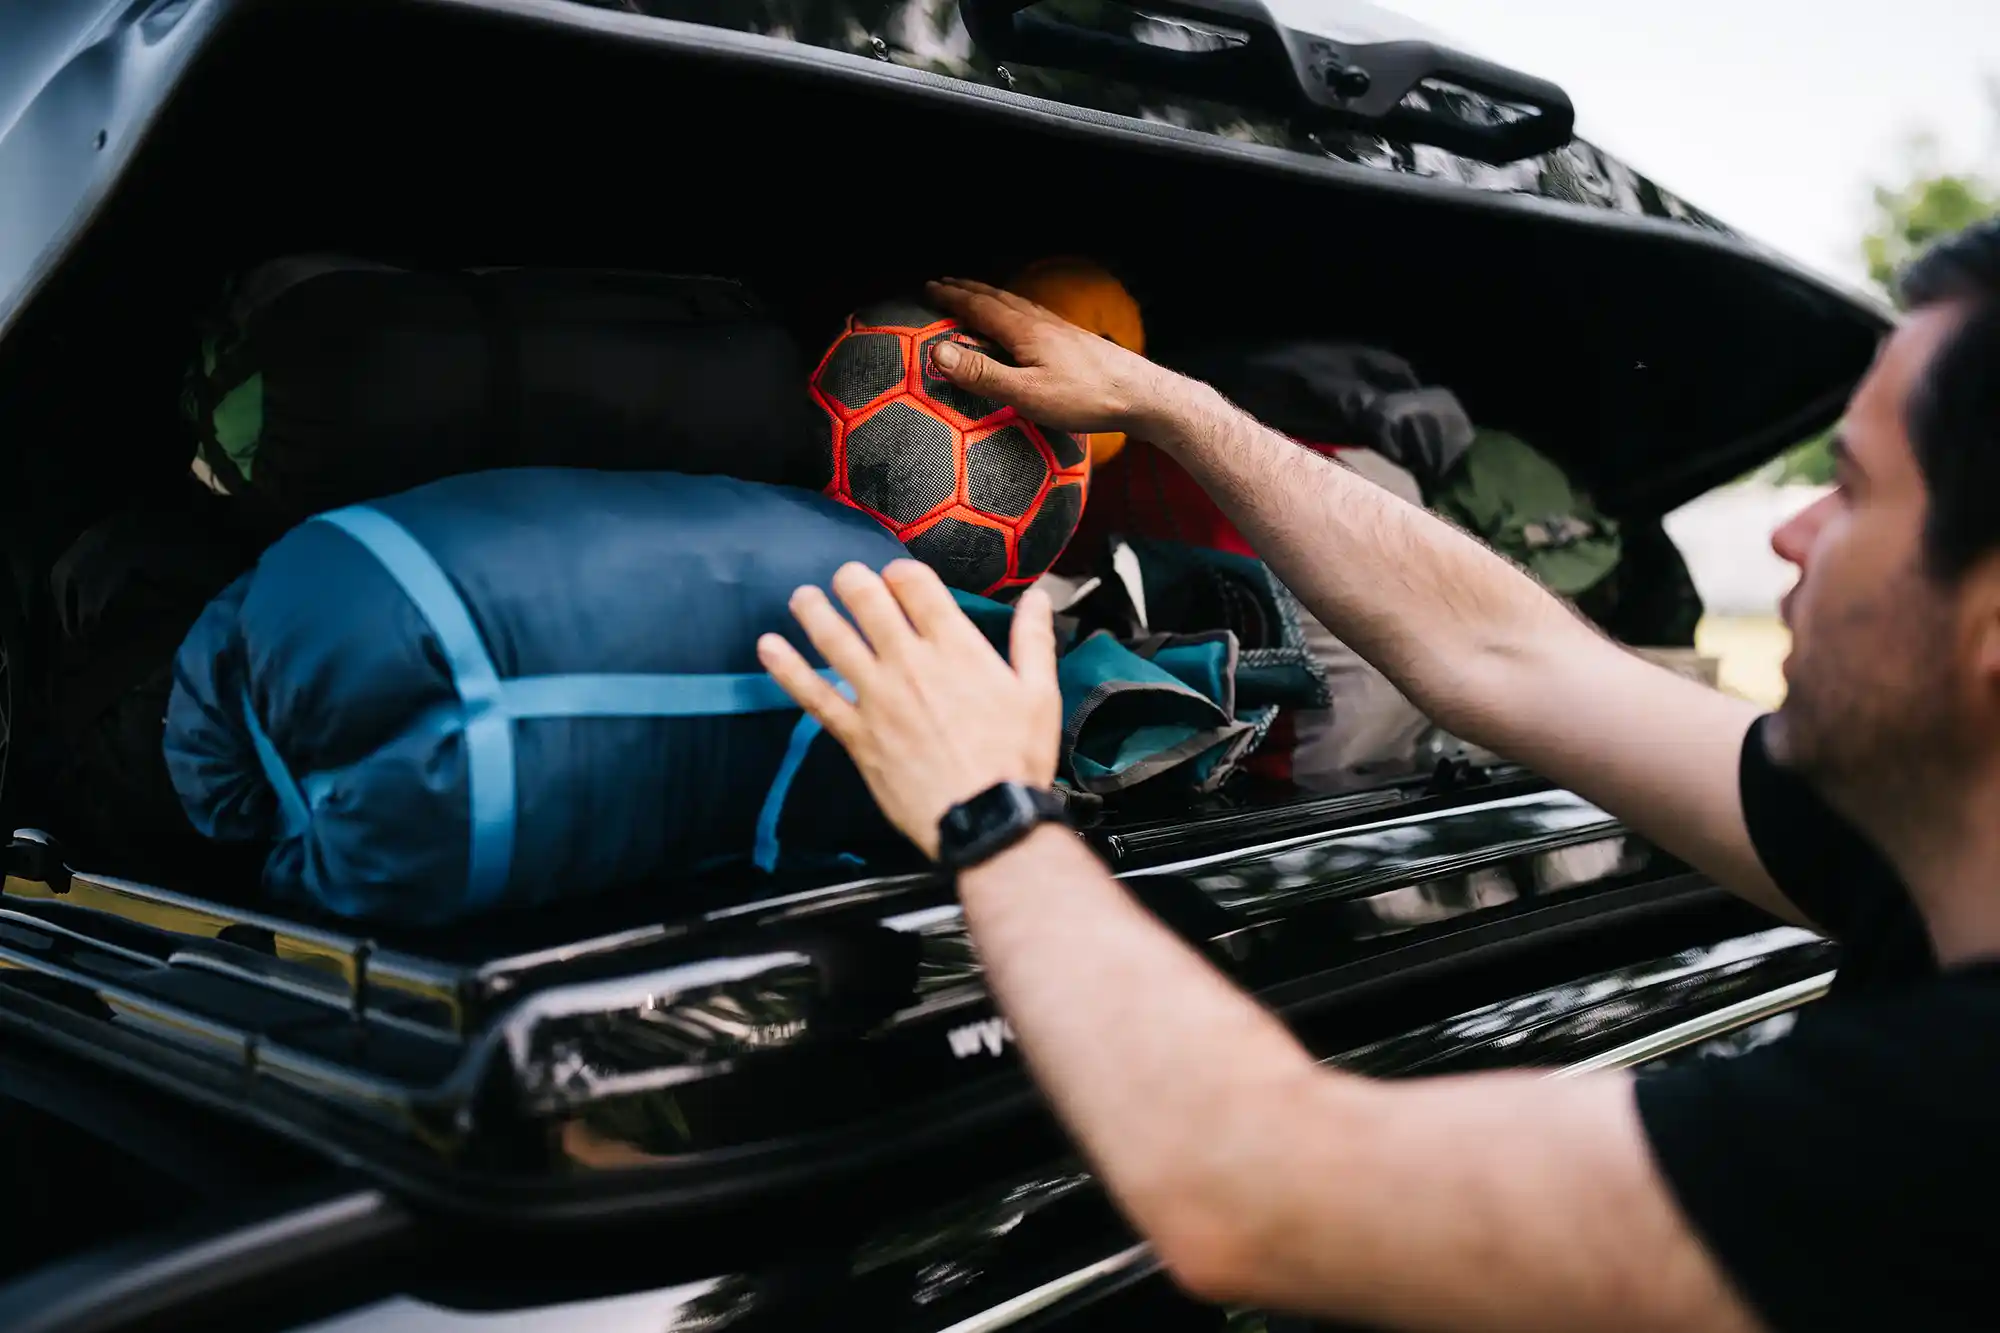 Die Dachbox richtig packen – mit Kindern und viel Gepäck sicher in den  Urlaub fahren